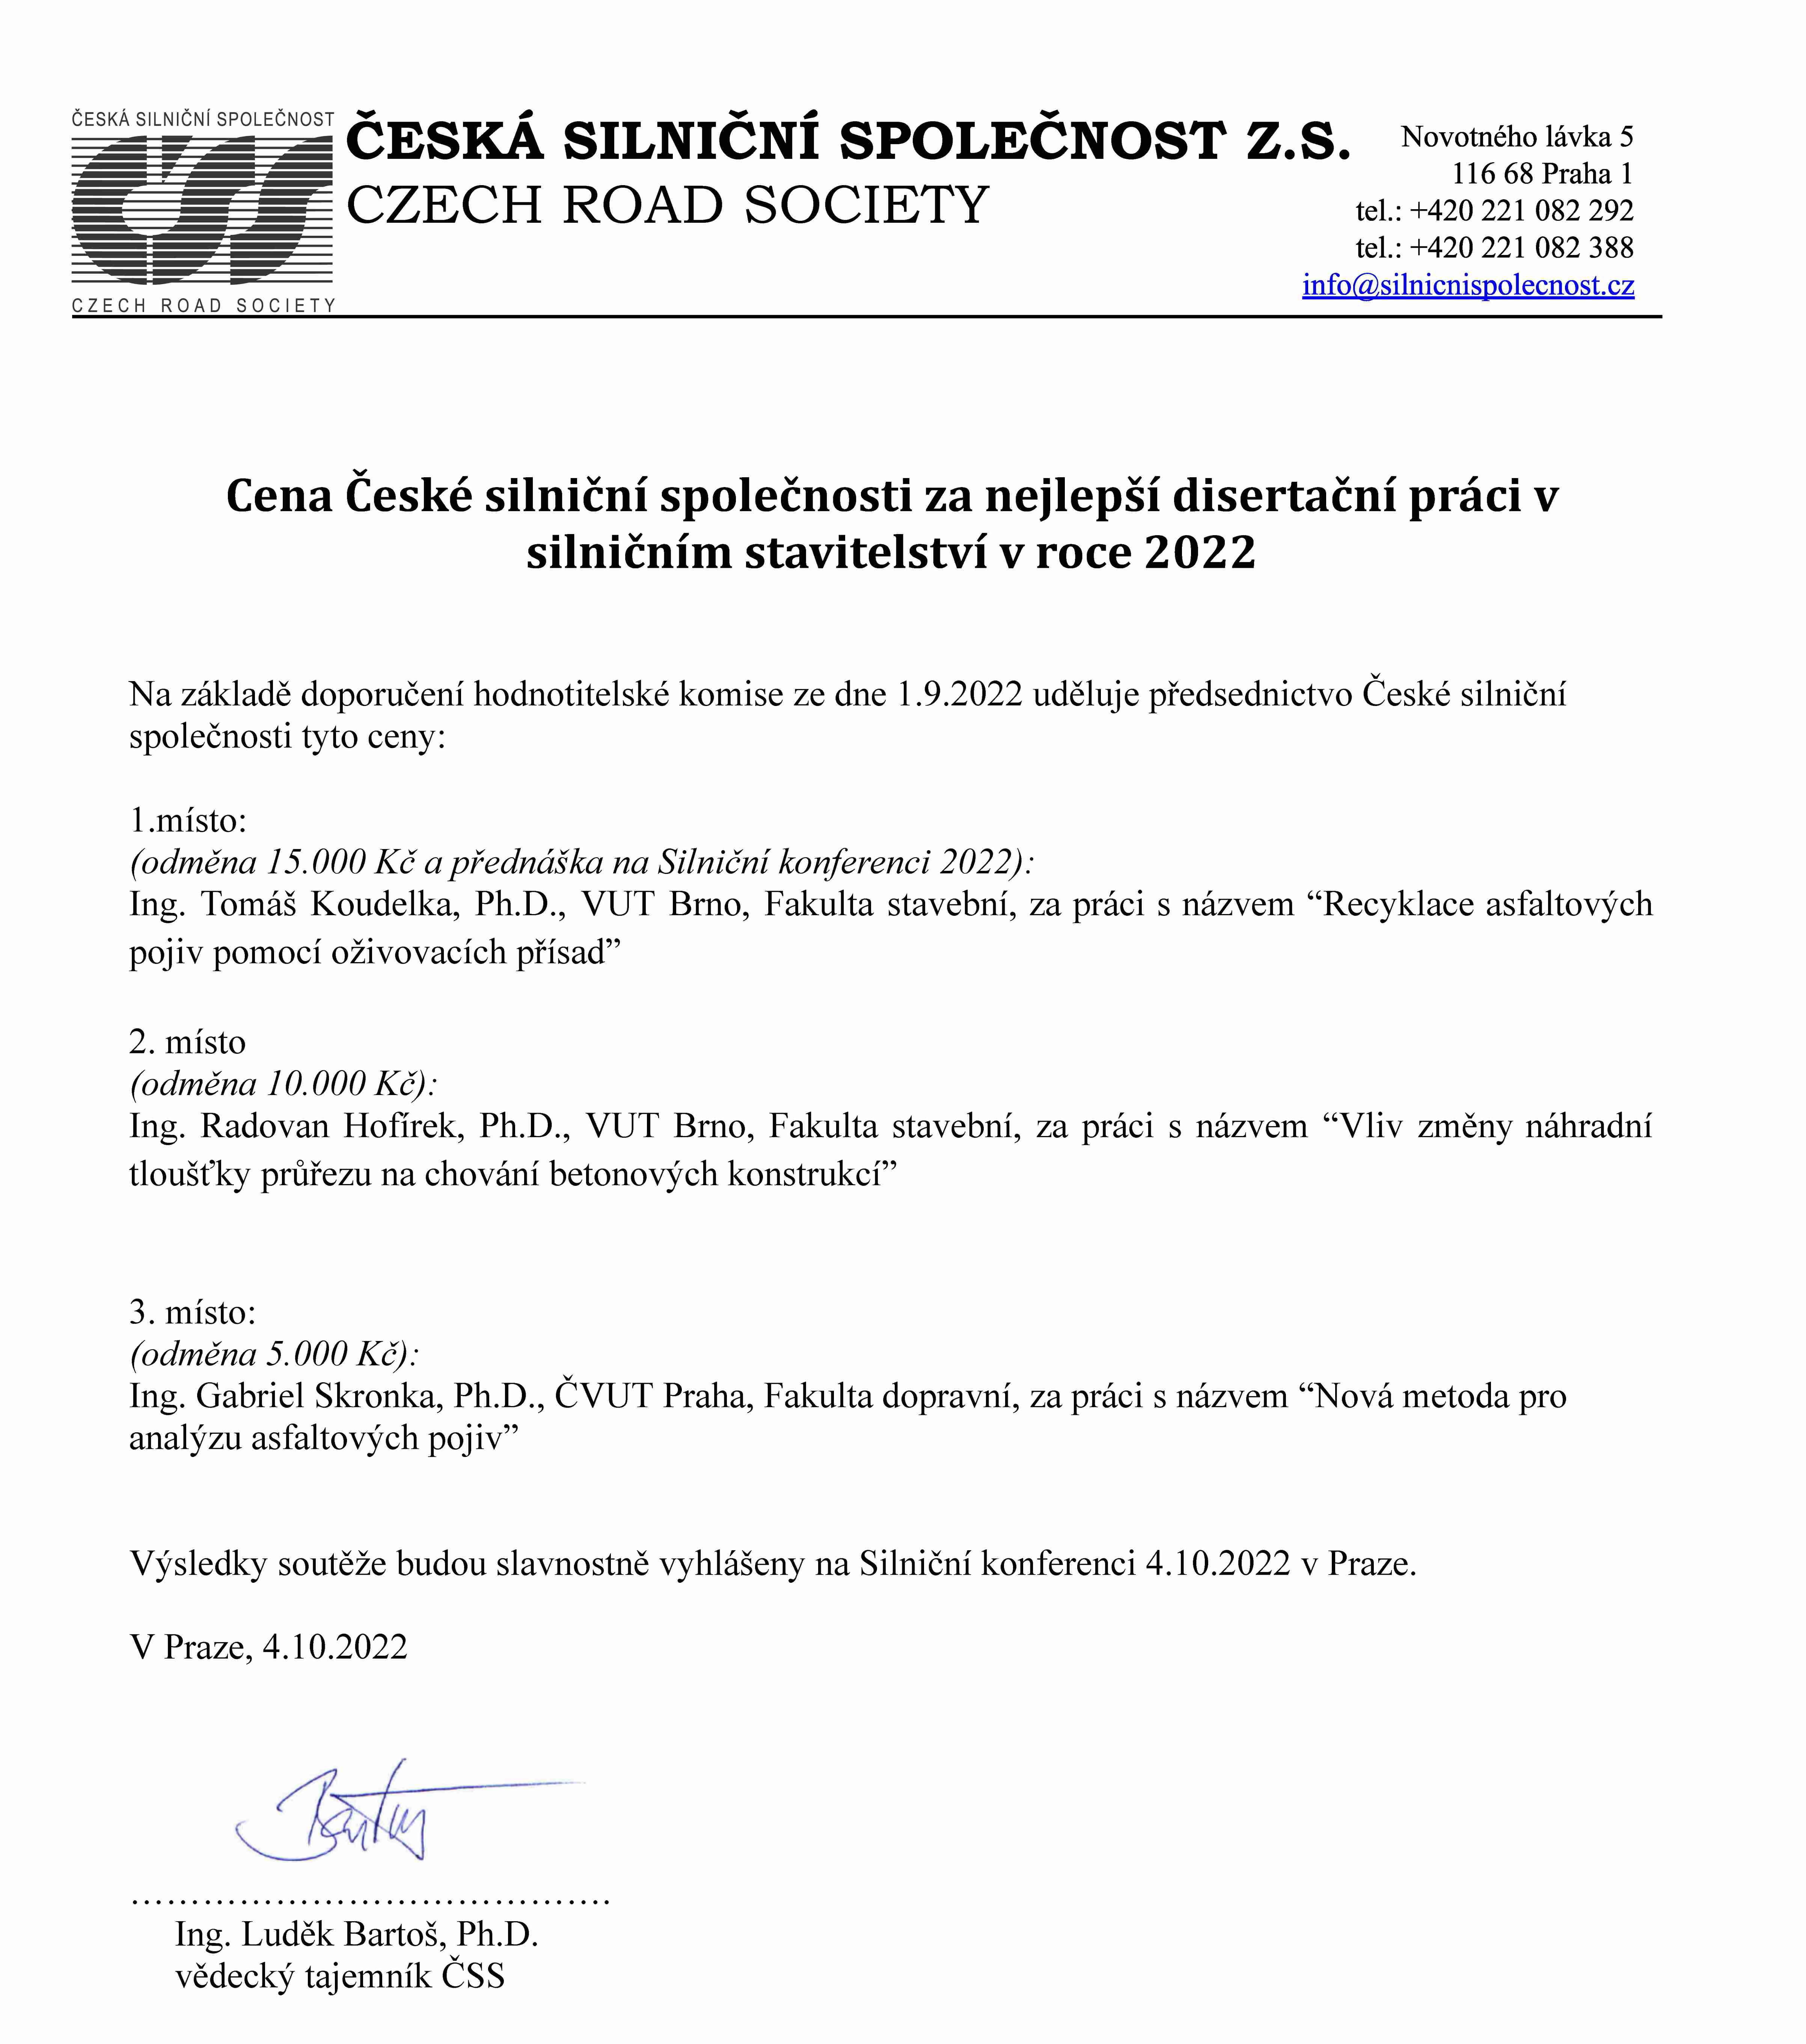 Cena ČSS disertační práce 2022 výsledky